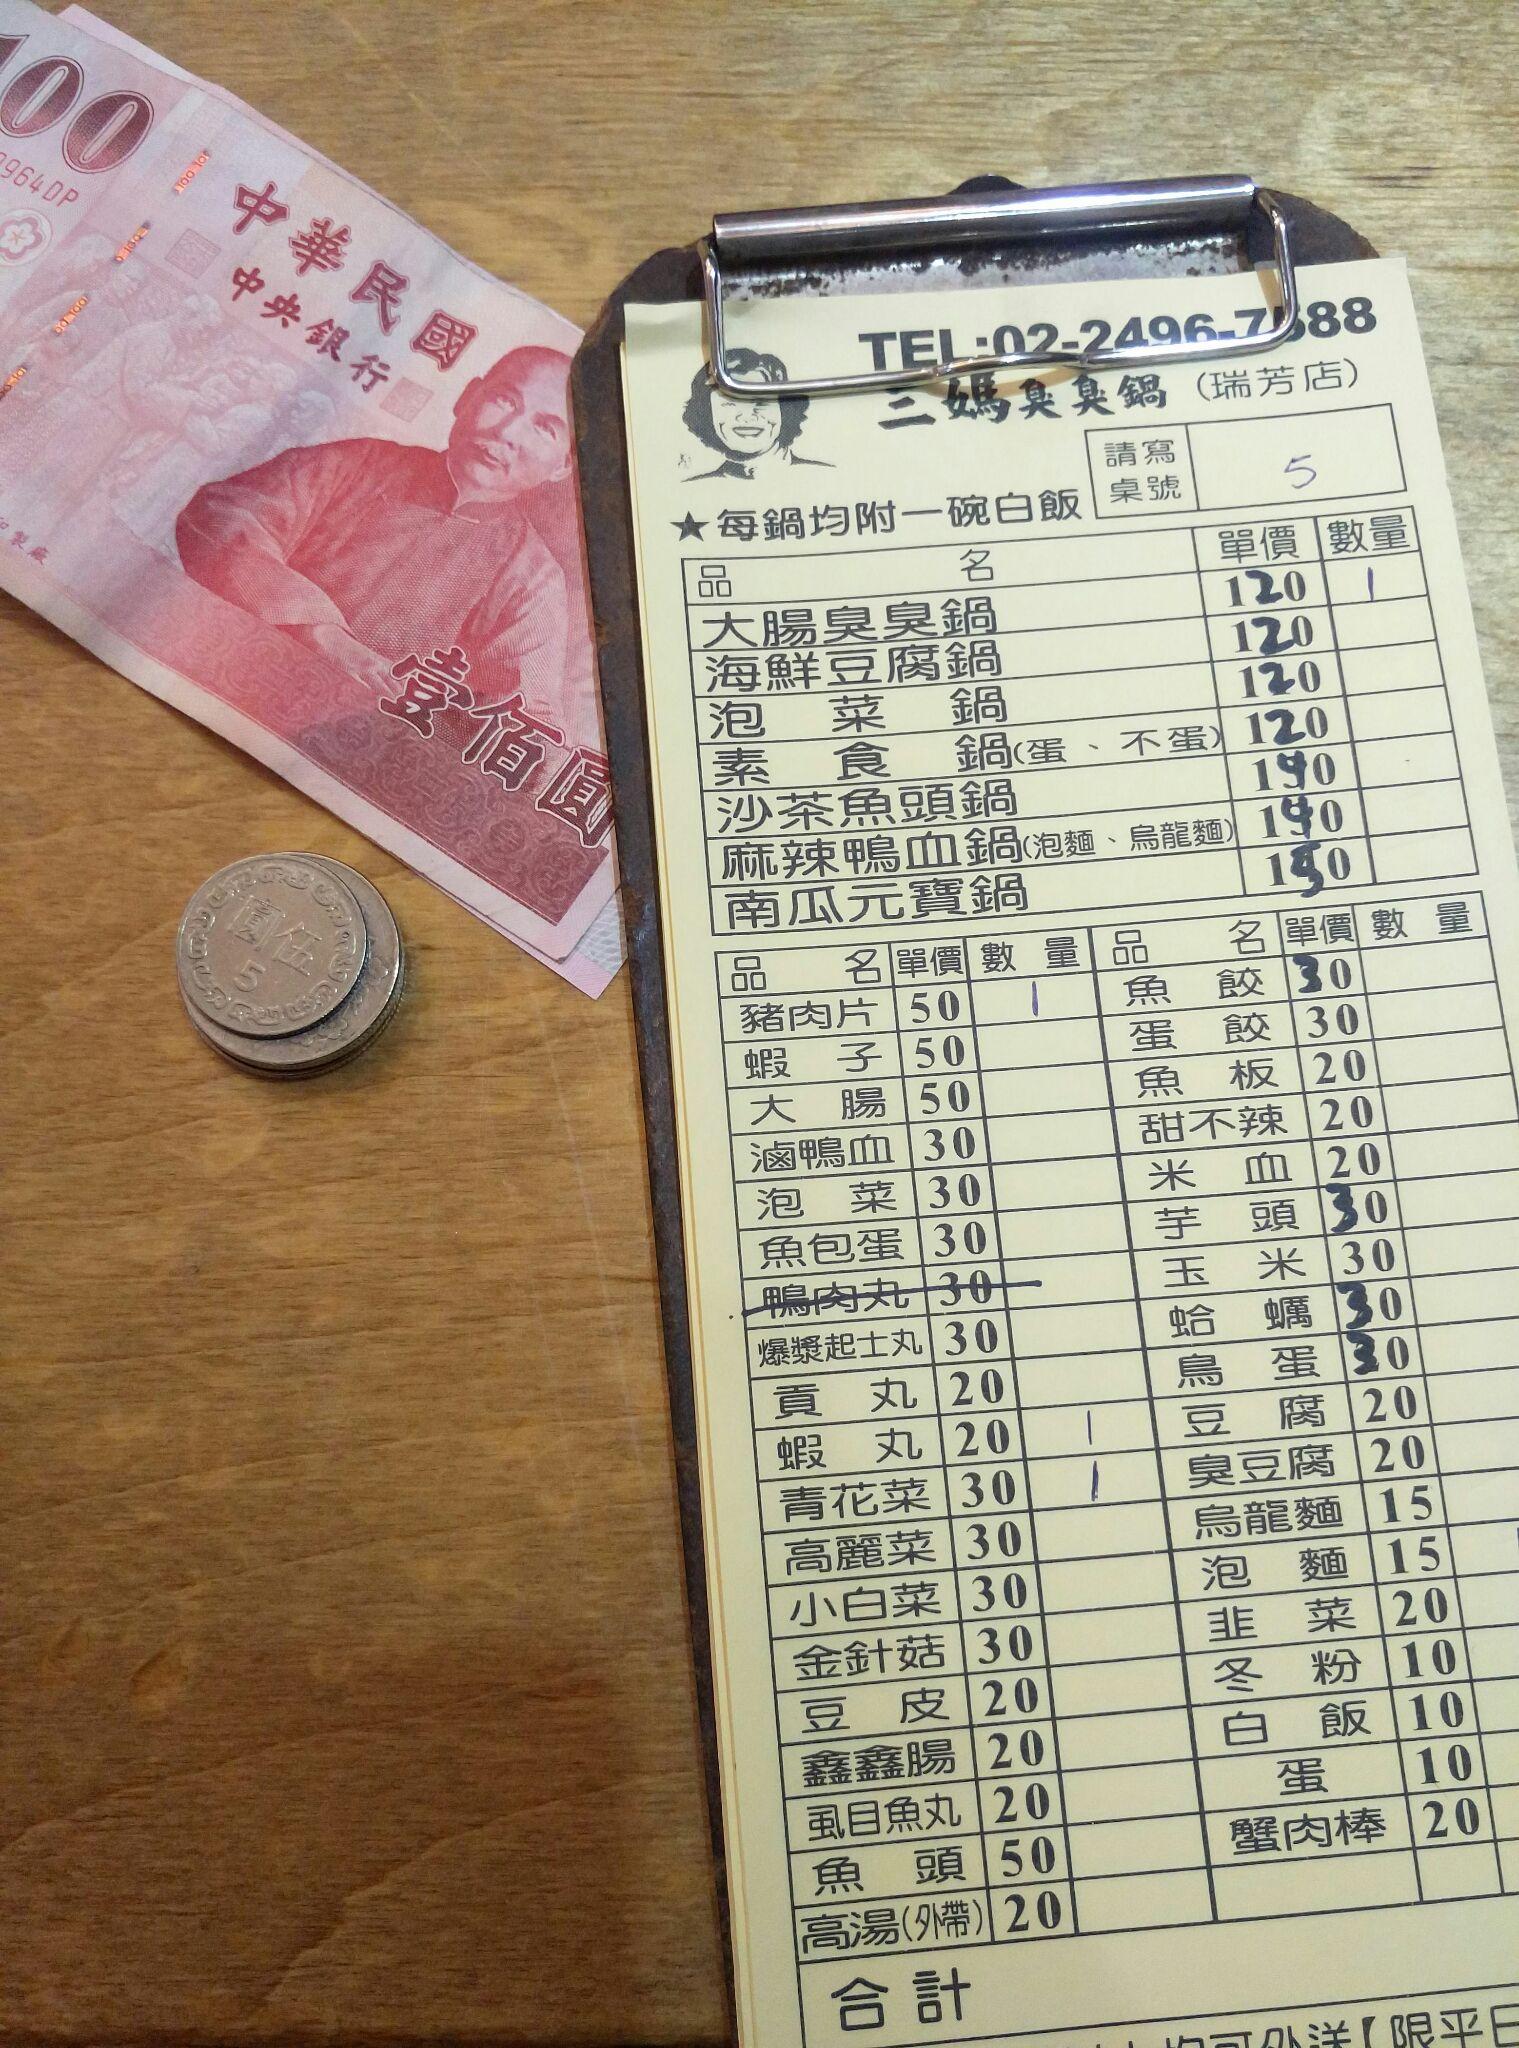 去台湾自由行,兑换台币哪里比较划算?